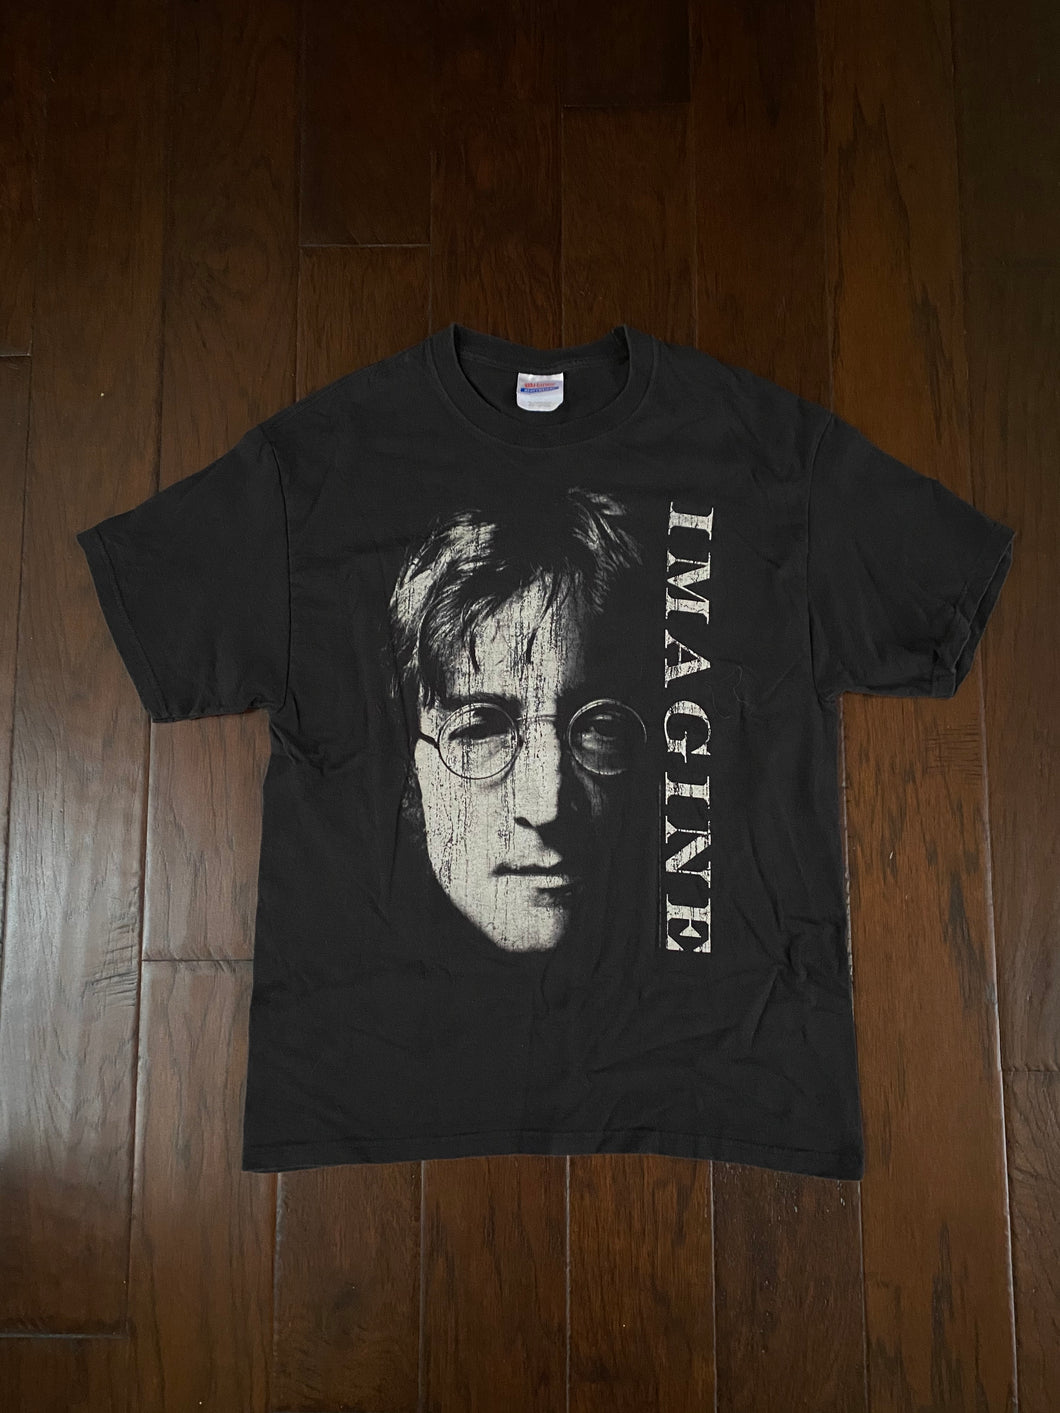 John Lennon 2007 Yoko Ono “Imagine” Vintage Distressed T-shirt